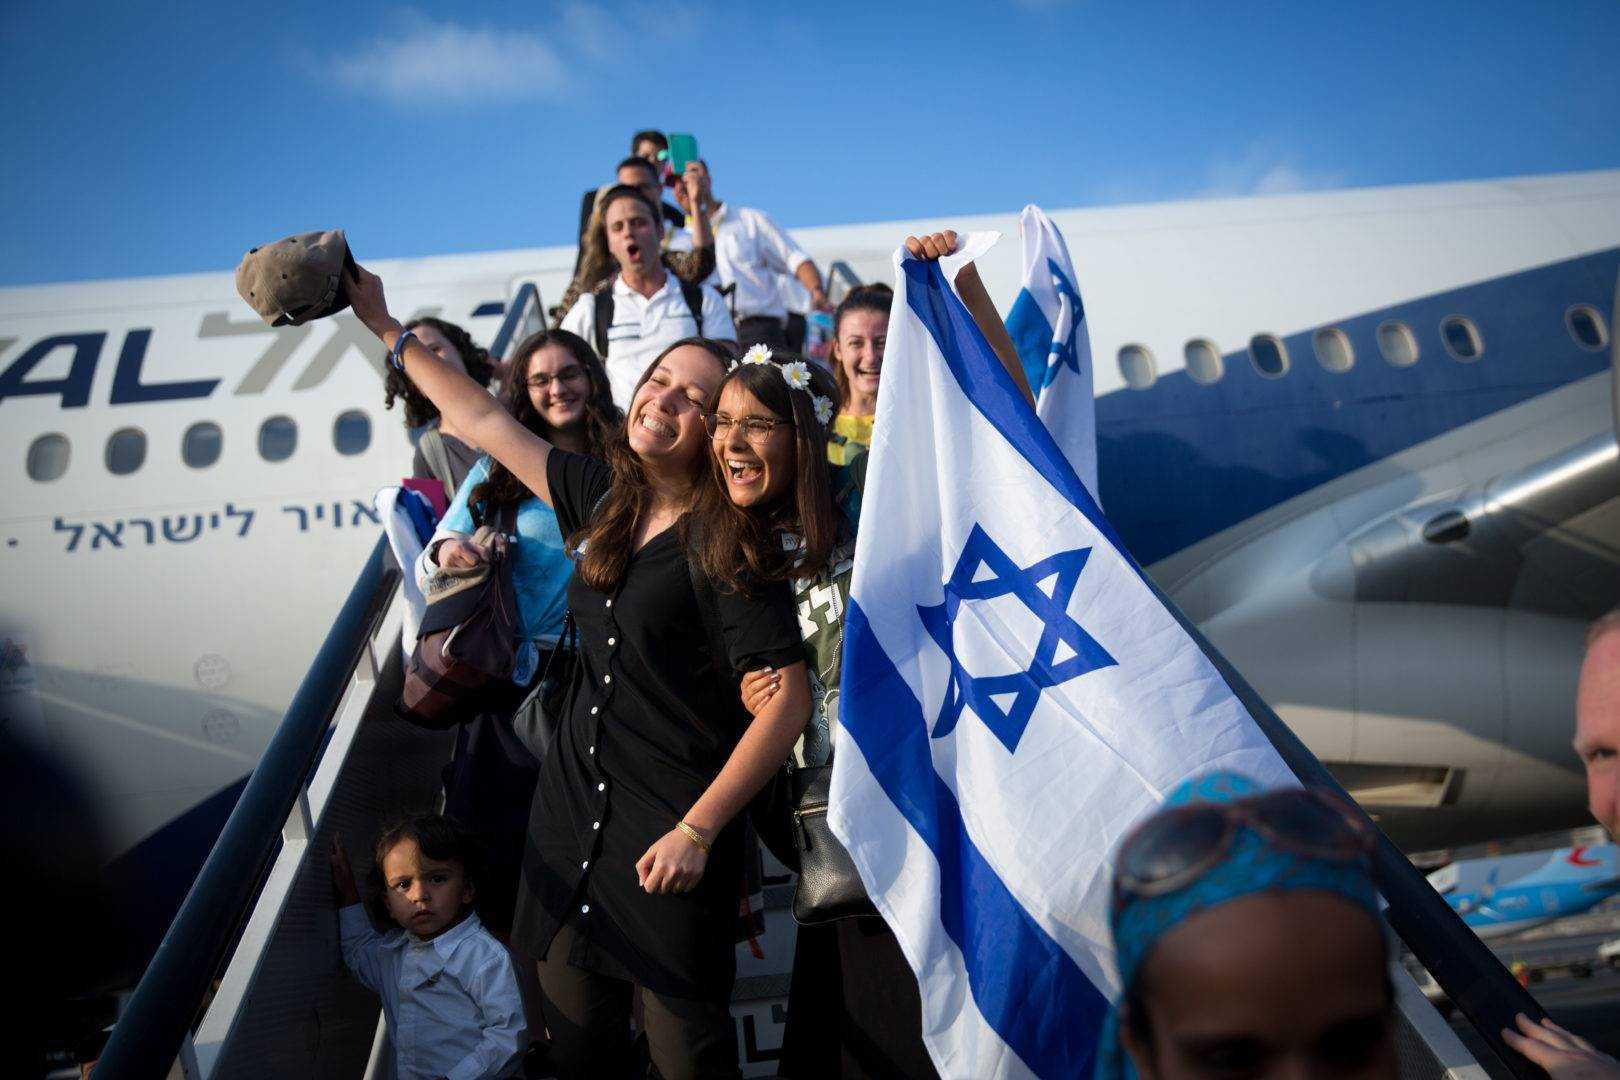 Как в израиле относятся к русским — преимущества и недостатки жизни, где лучше жить, отзывы